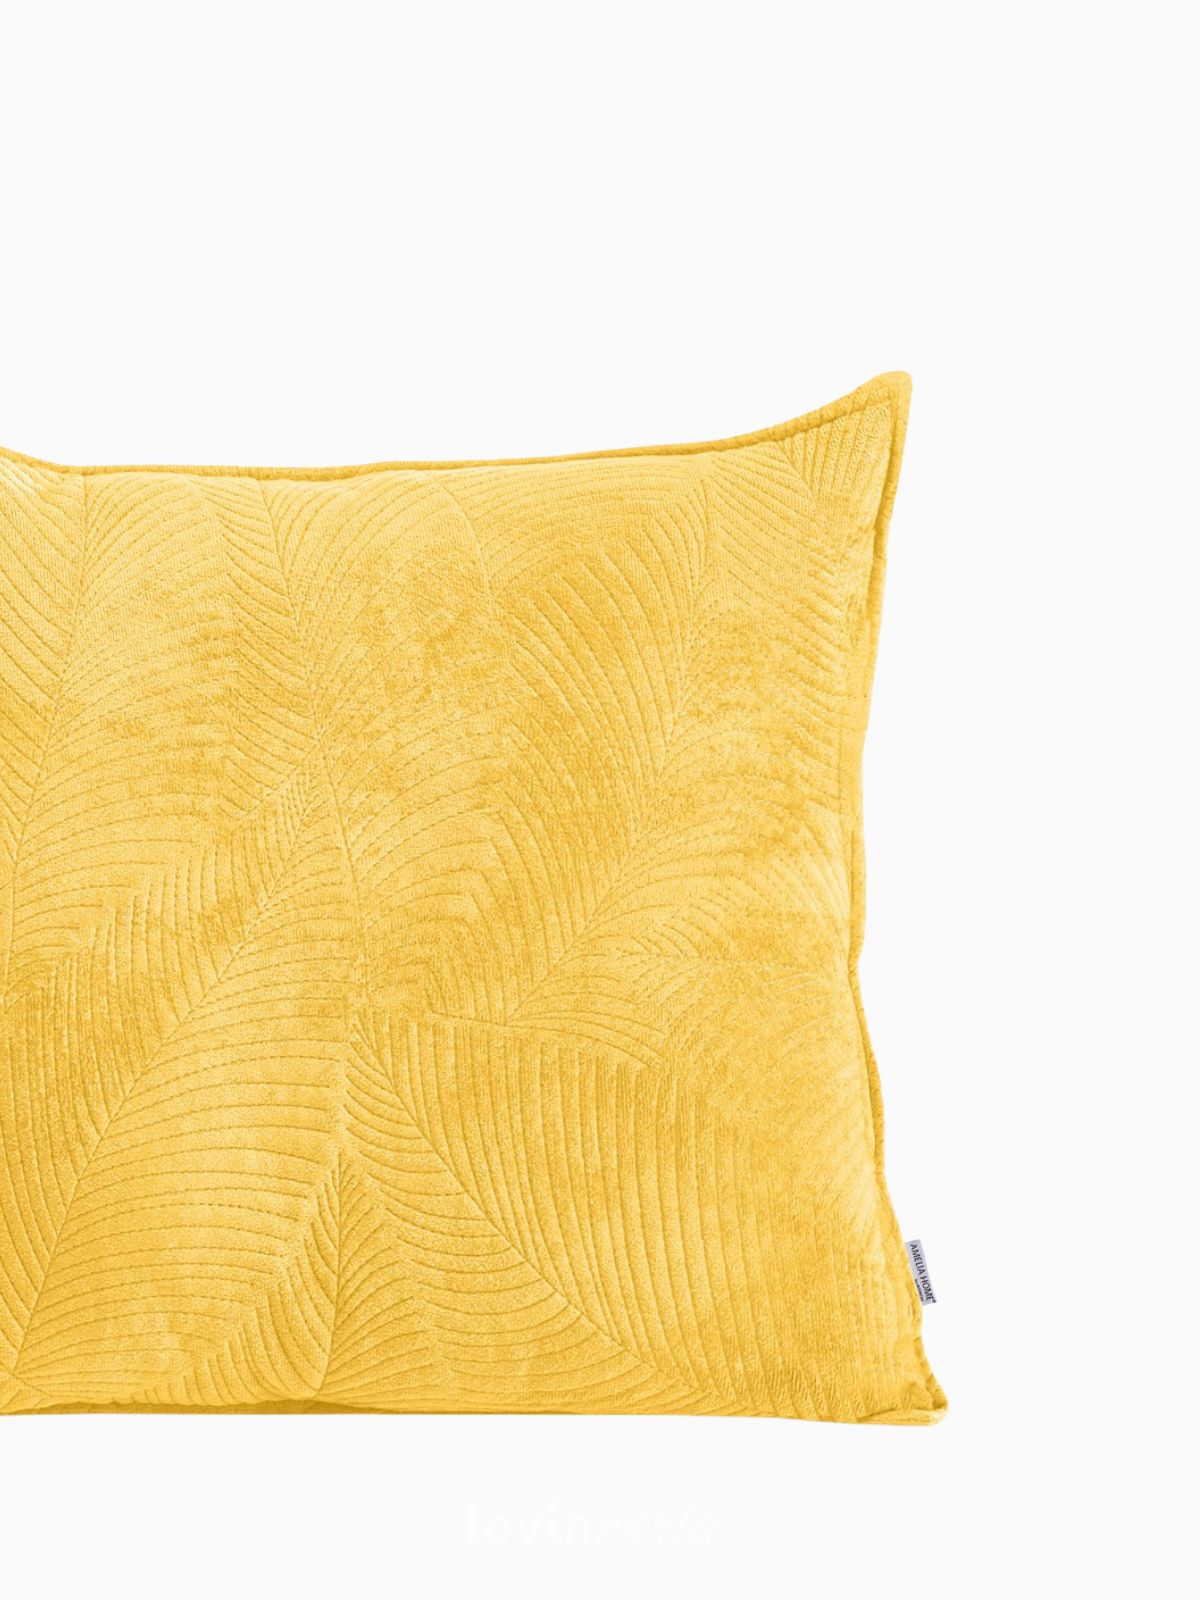 Cuscino decorativo in velluto Palsha, colore giallo 45x45 cm.-3